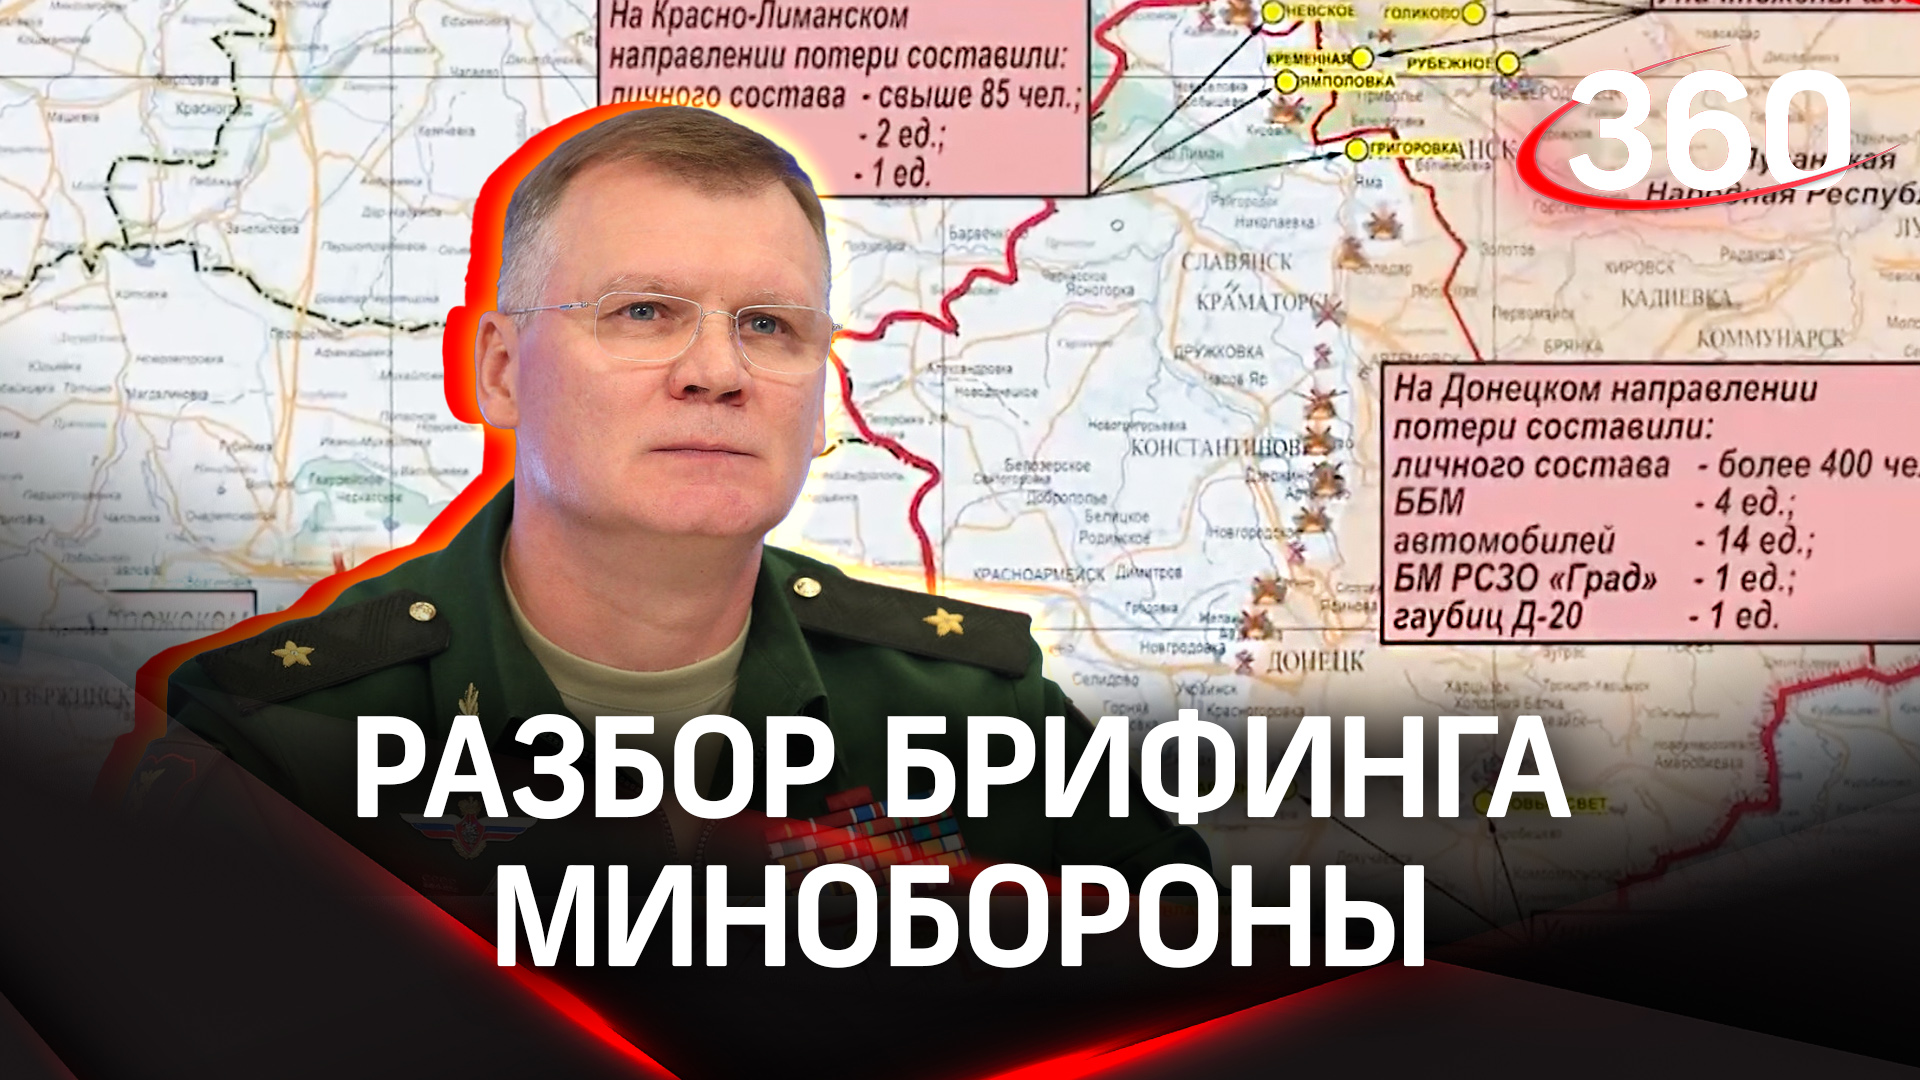 На Донецком направлении уничтожено более 400 военнослужащих ВСУ | Анализ брифинга Минобороны